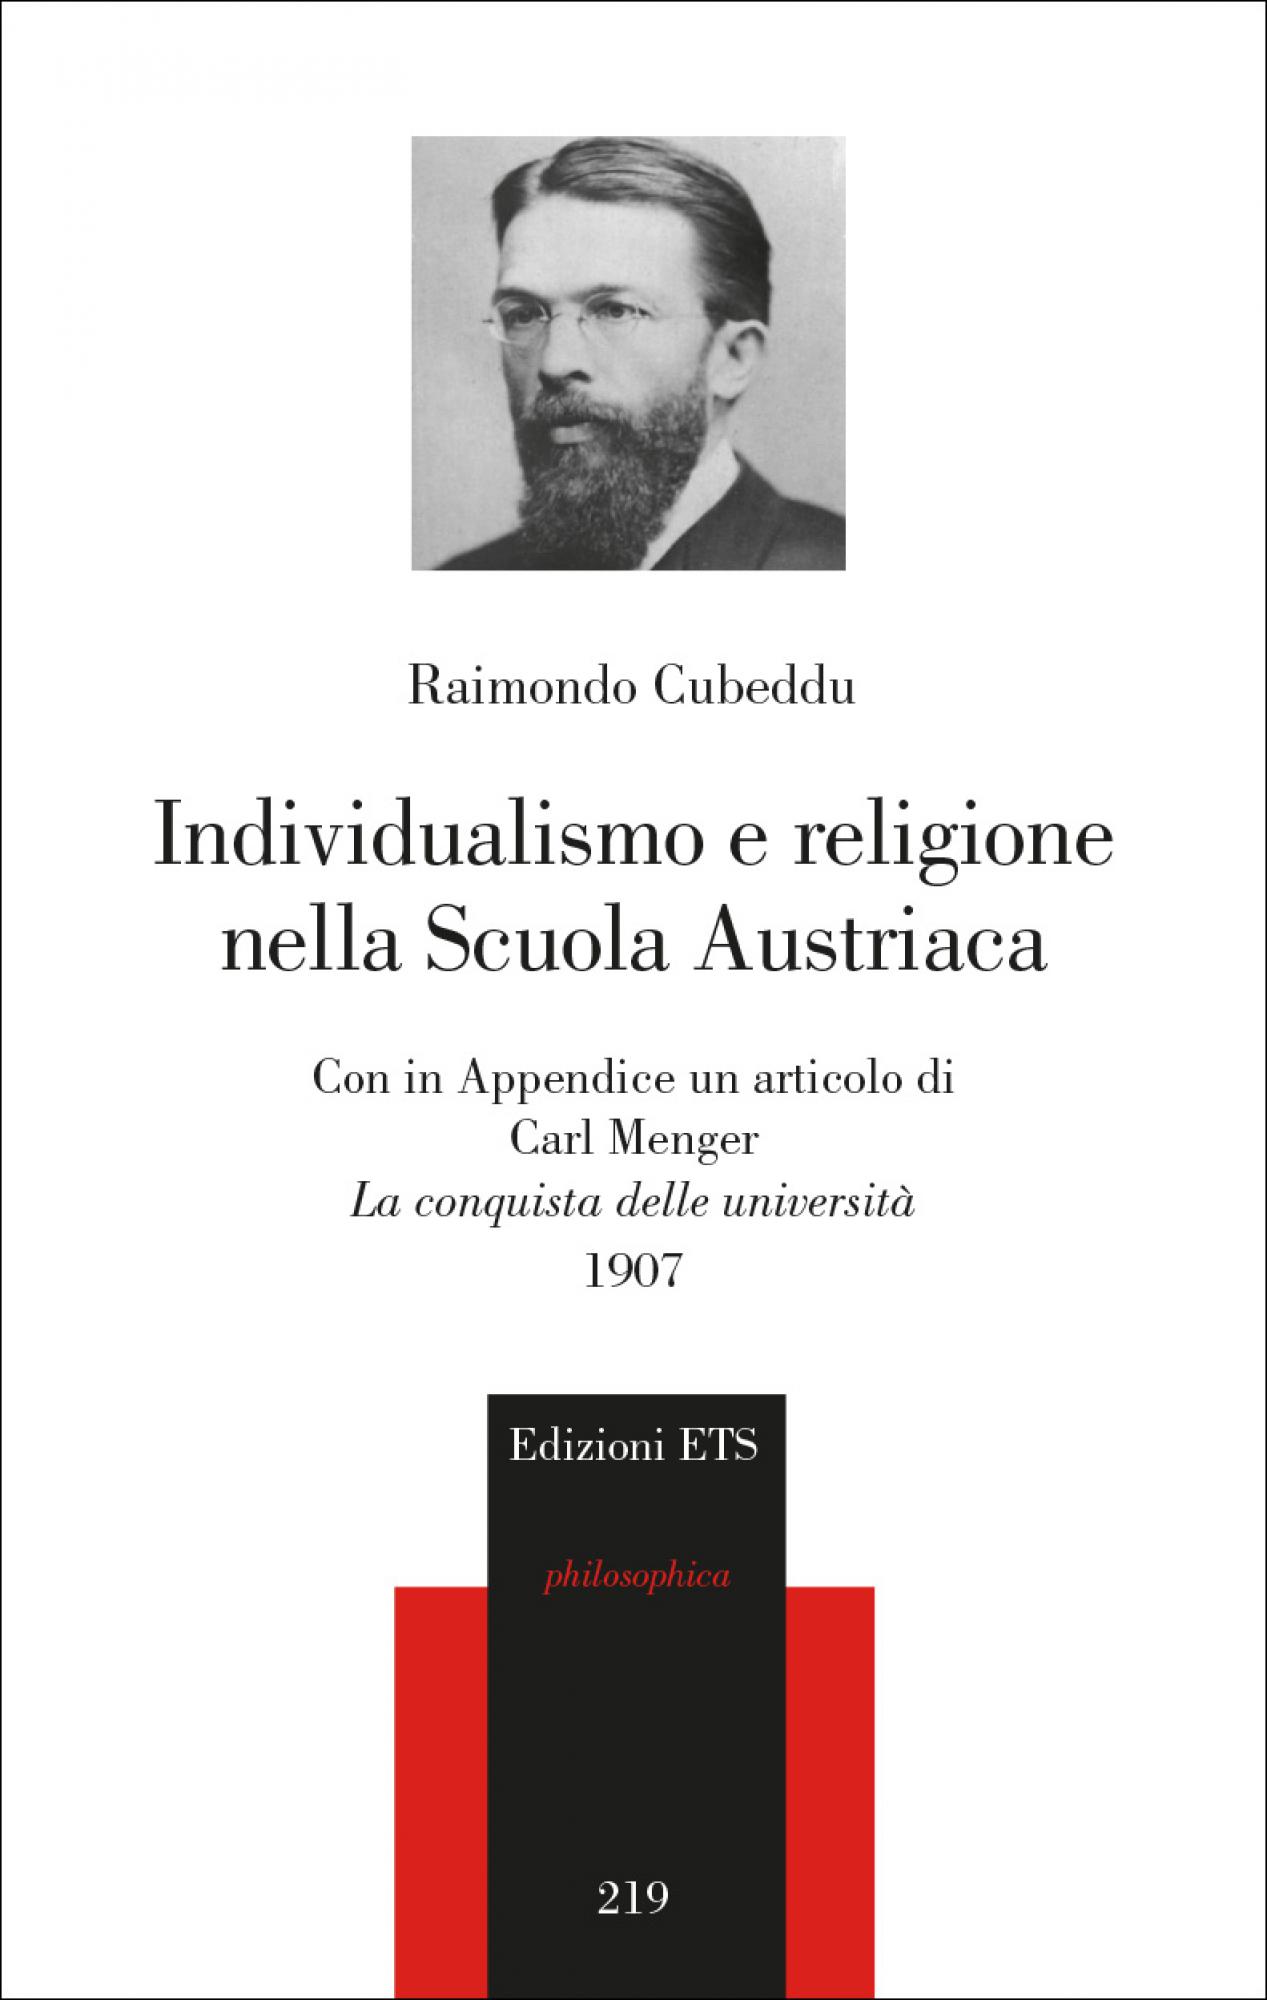 Individualismo e religione nella Scuola Austriaca.Con in Appendice un articolo di Carl Menger, “La conquista delle università”, 1907